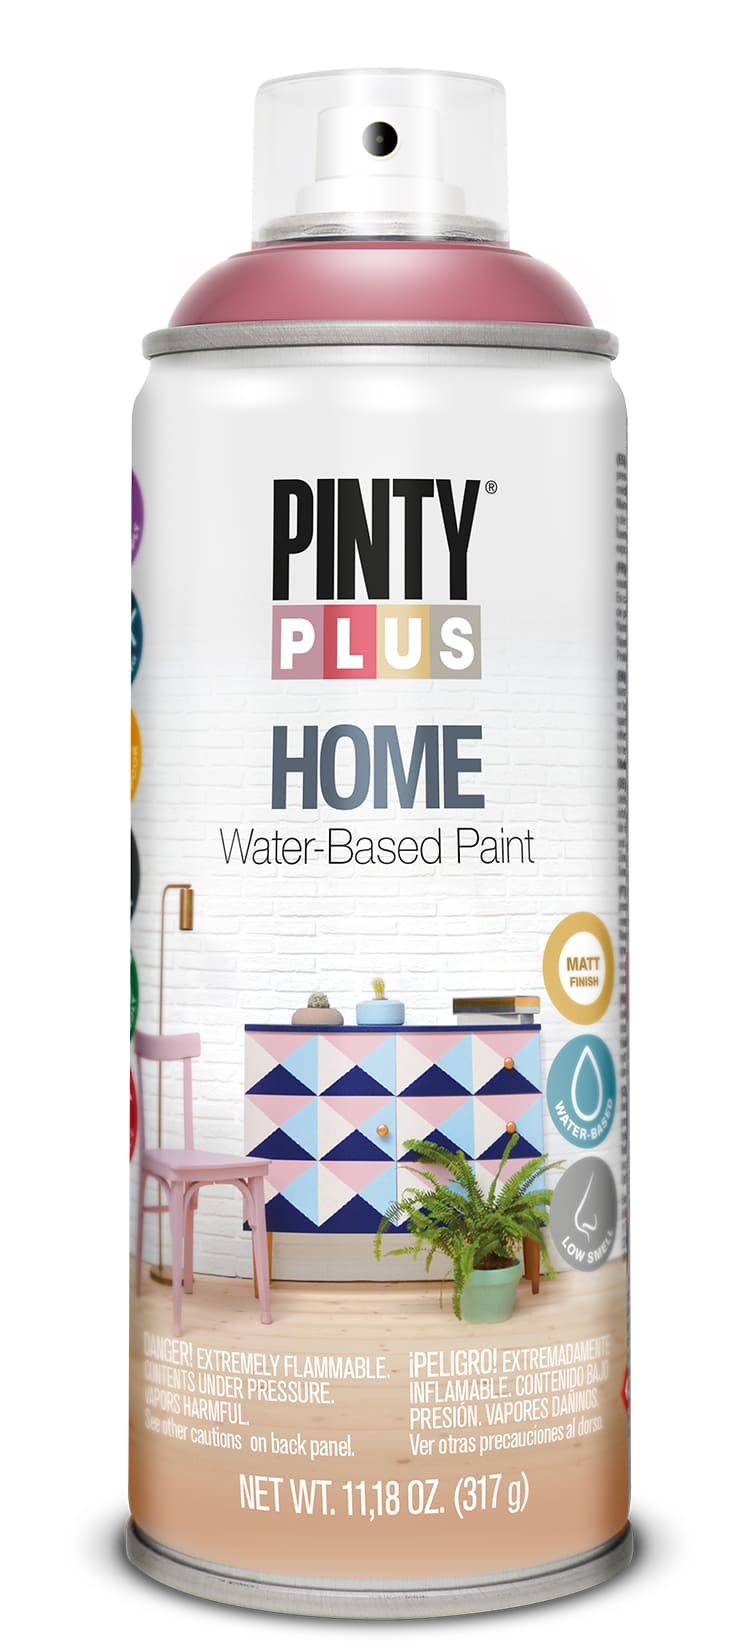 Pintyplus Home spray paint